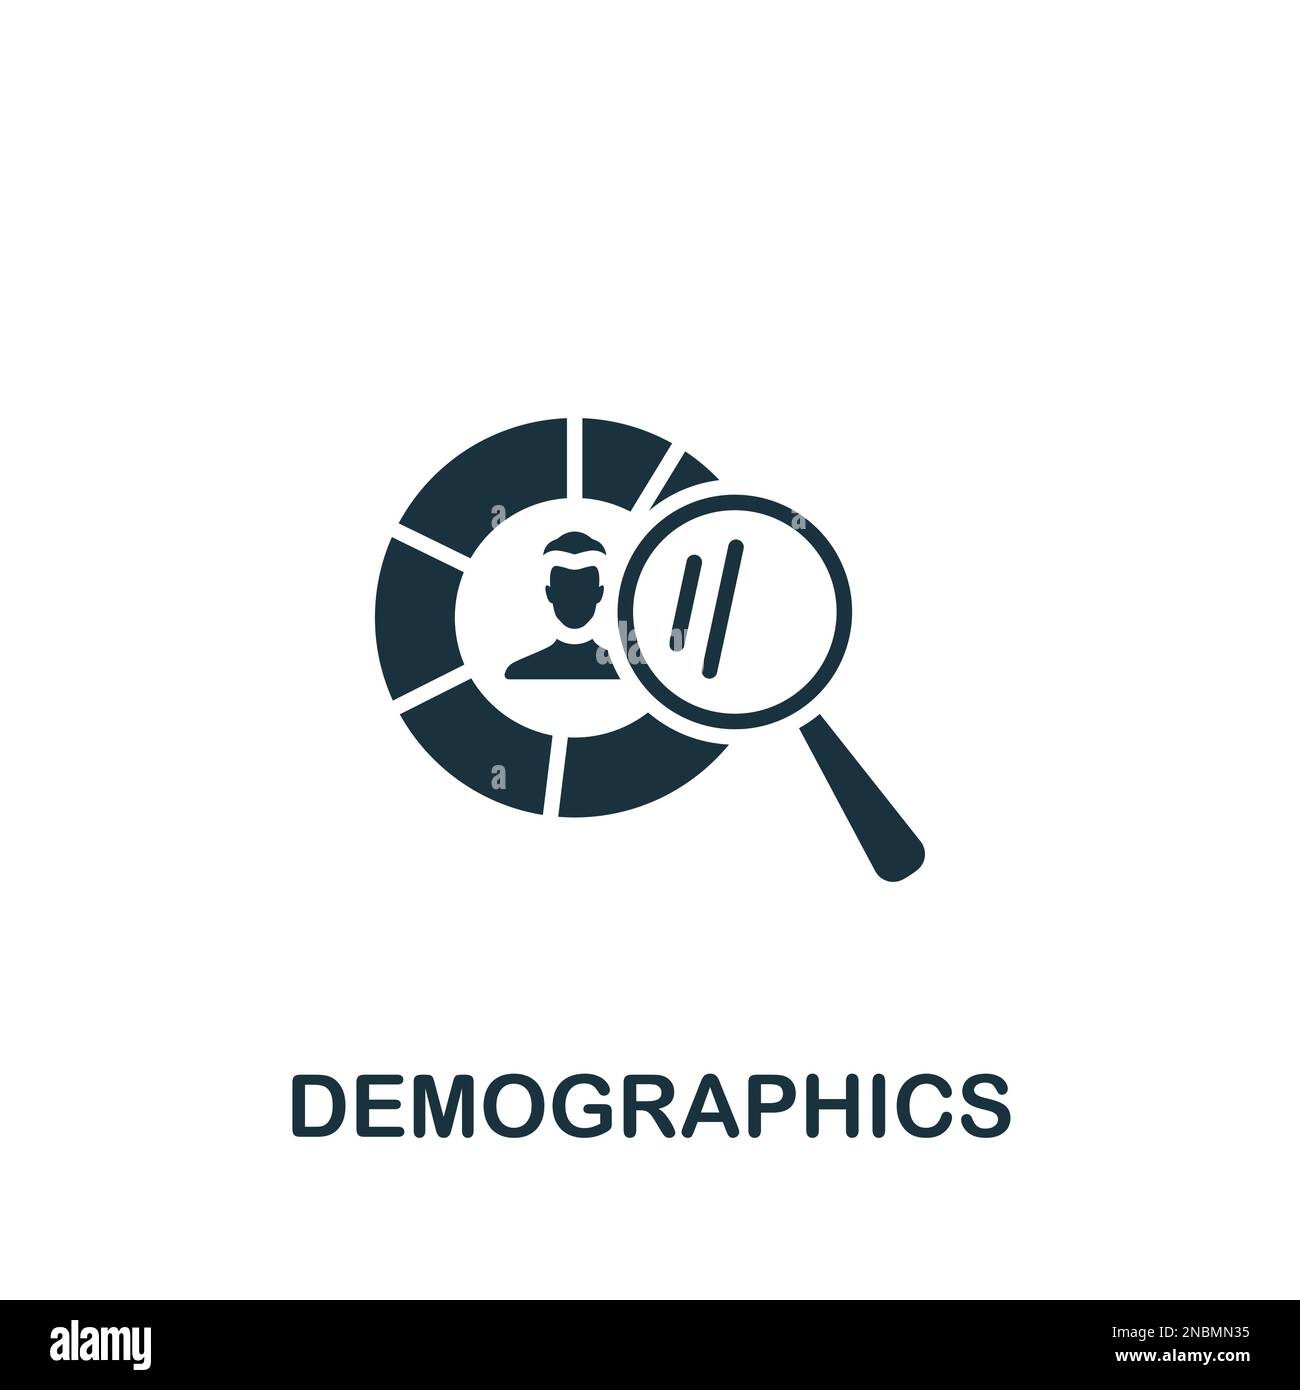 Icône des données démographiques. Affiche monochrome simple de la collection électorale. Icône de données démographiques pour le logo, les modèles, la conception Web et les infographies. Illustration de Vecteur